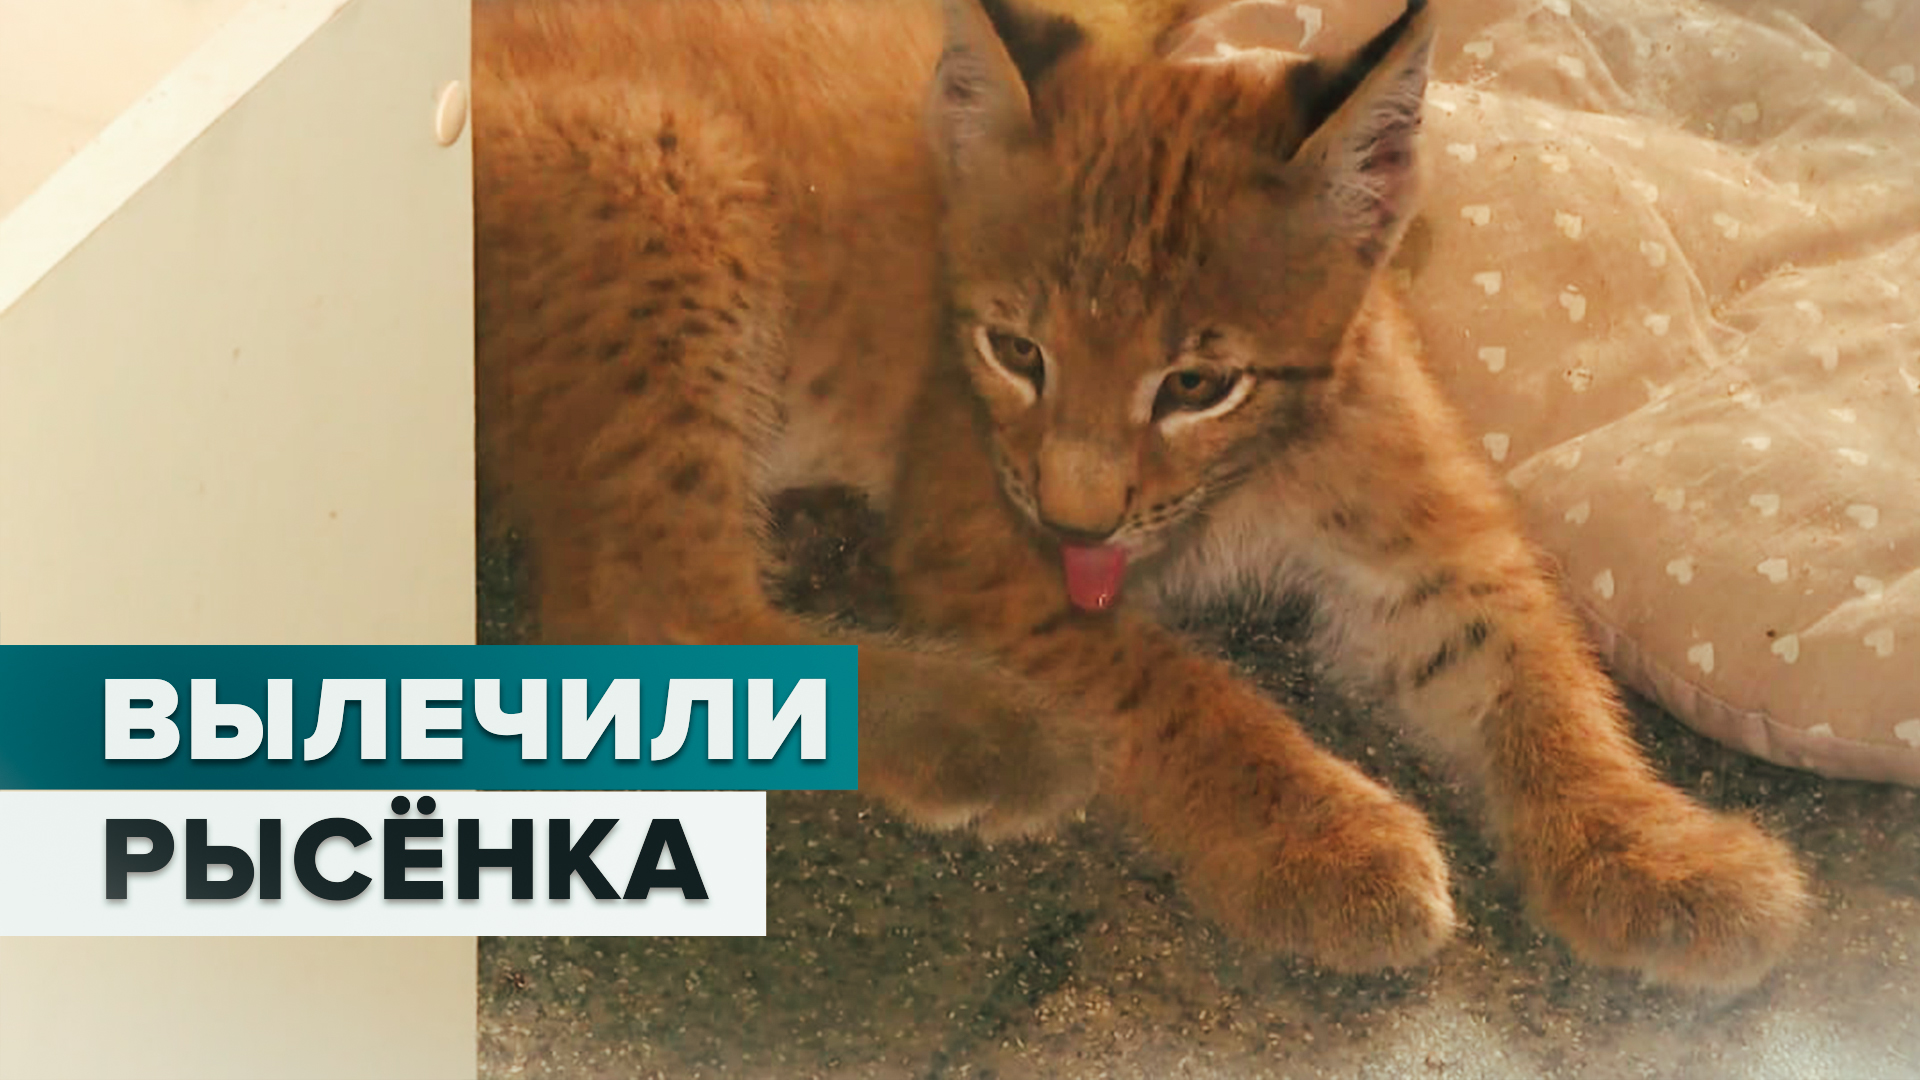 В иркутском «Доме природы» выходили рысёнка-инвалида